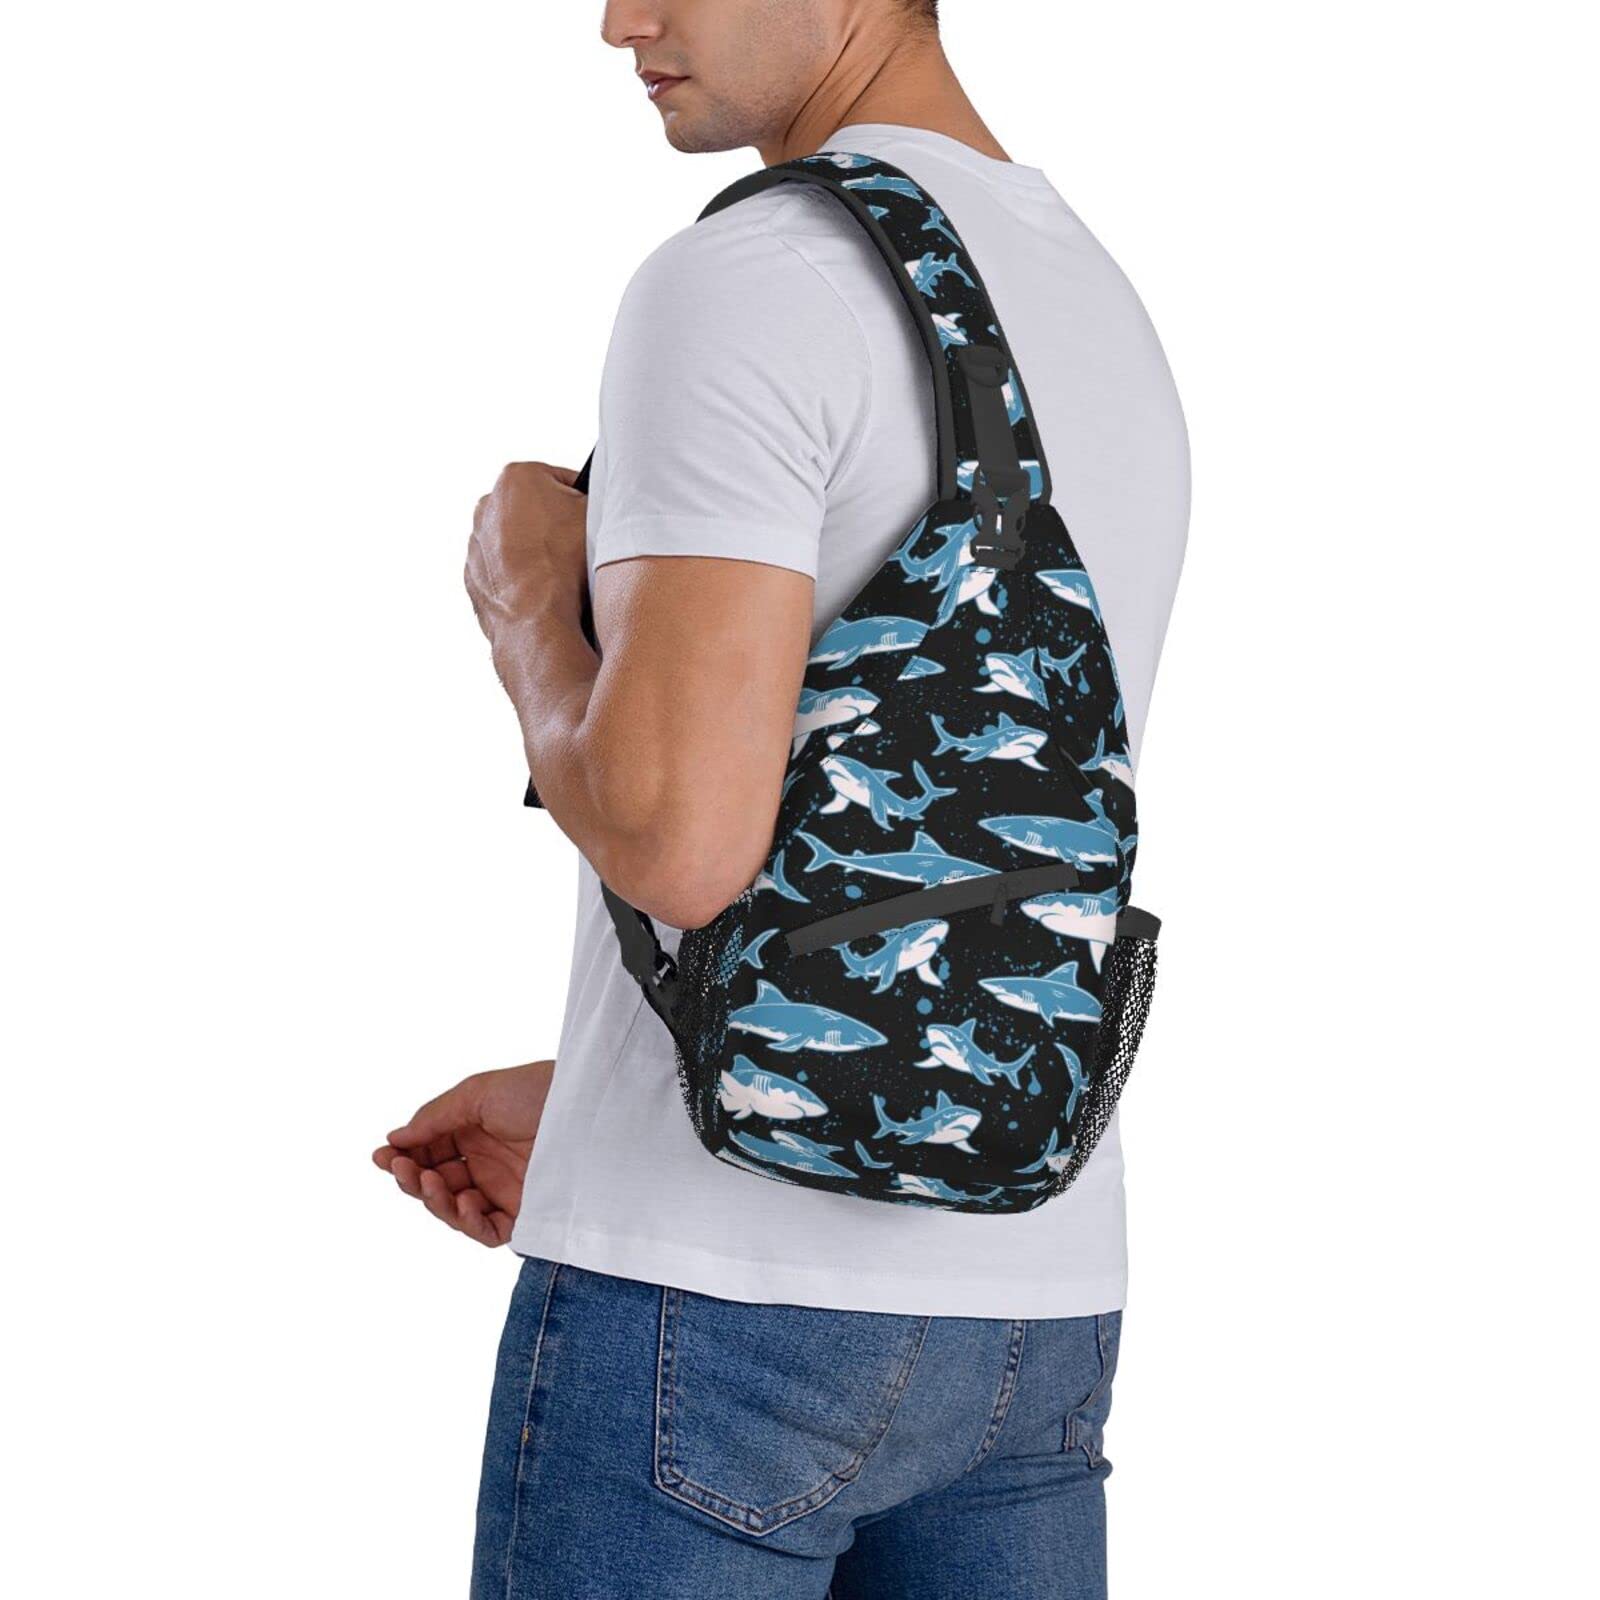 Yrebyou Shark Sling Bag for Women Men Crossbody Strap Backpack Lightweight Waterproof Travel Hiking Daypack Shoulder Bag